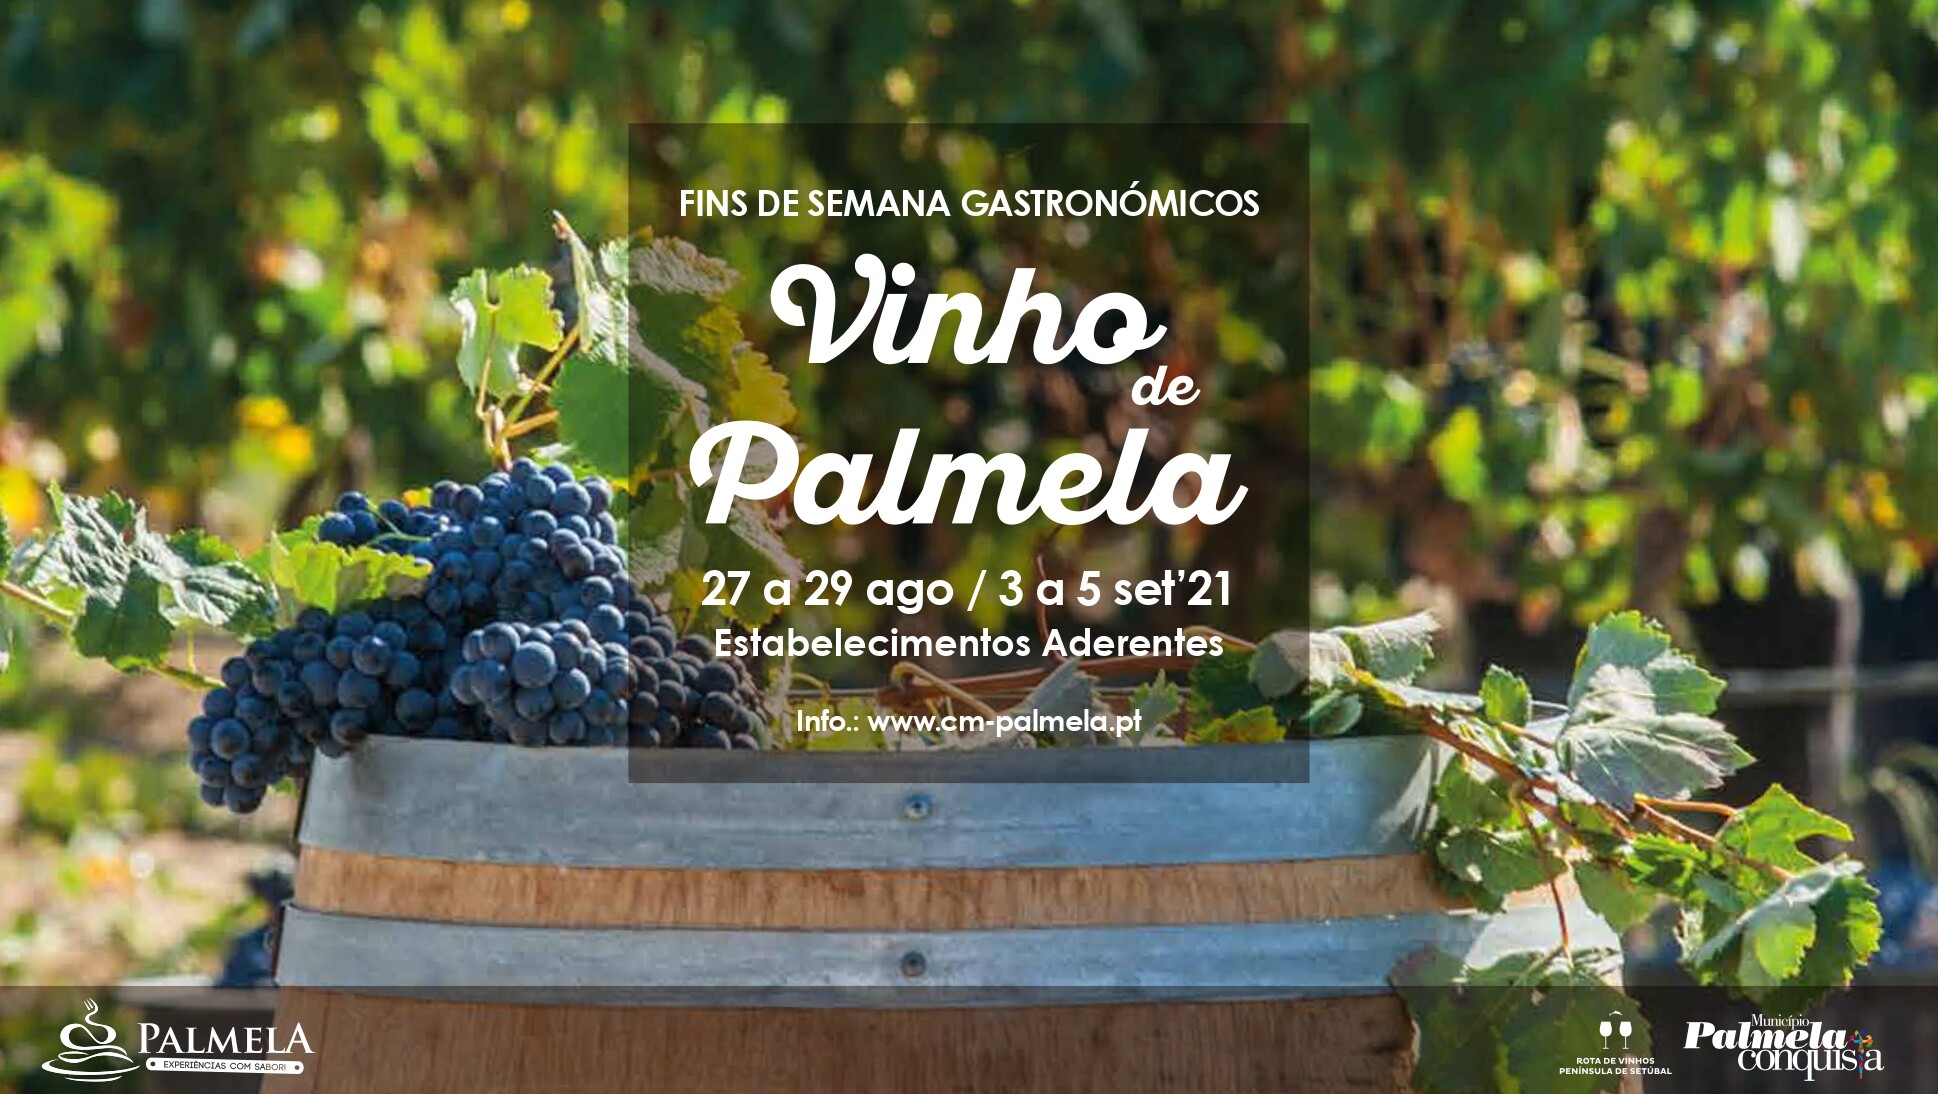 Vinho de Palmela em destaque nos próximos Fins de Semana Gastronómicos 